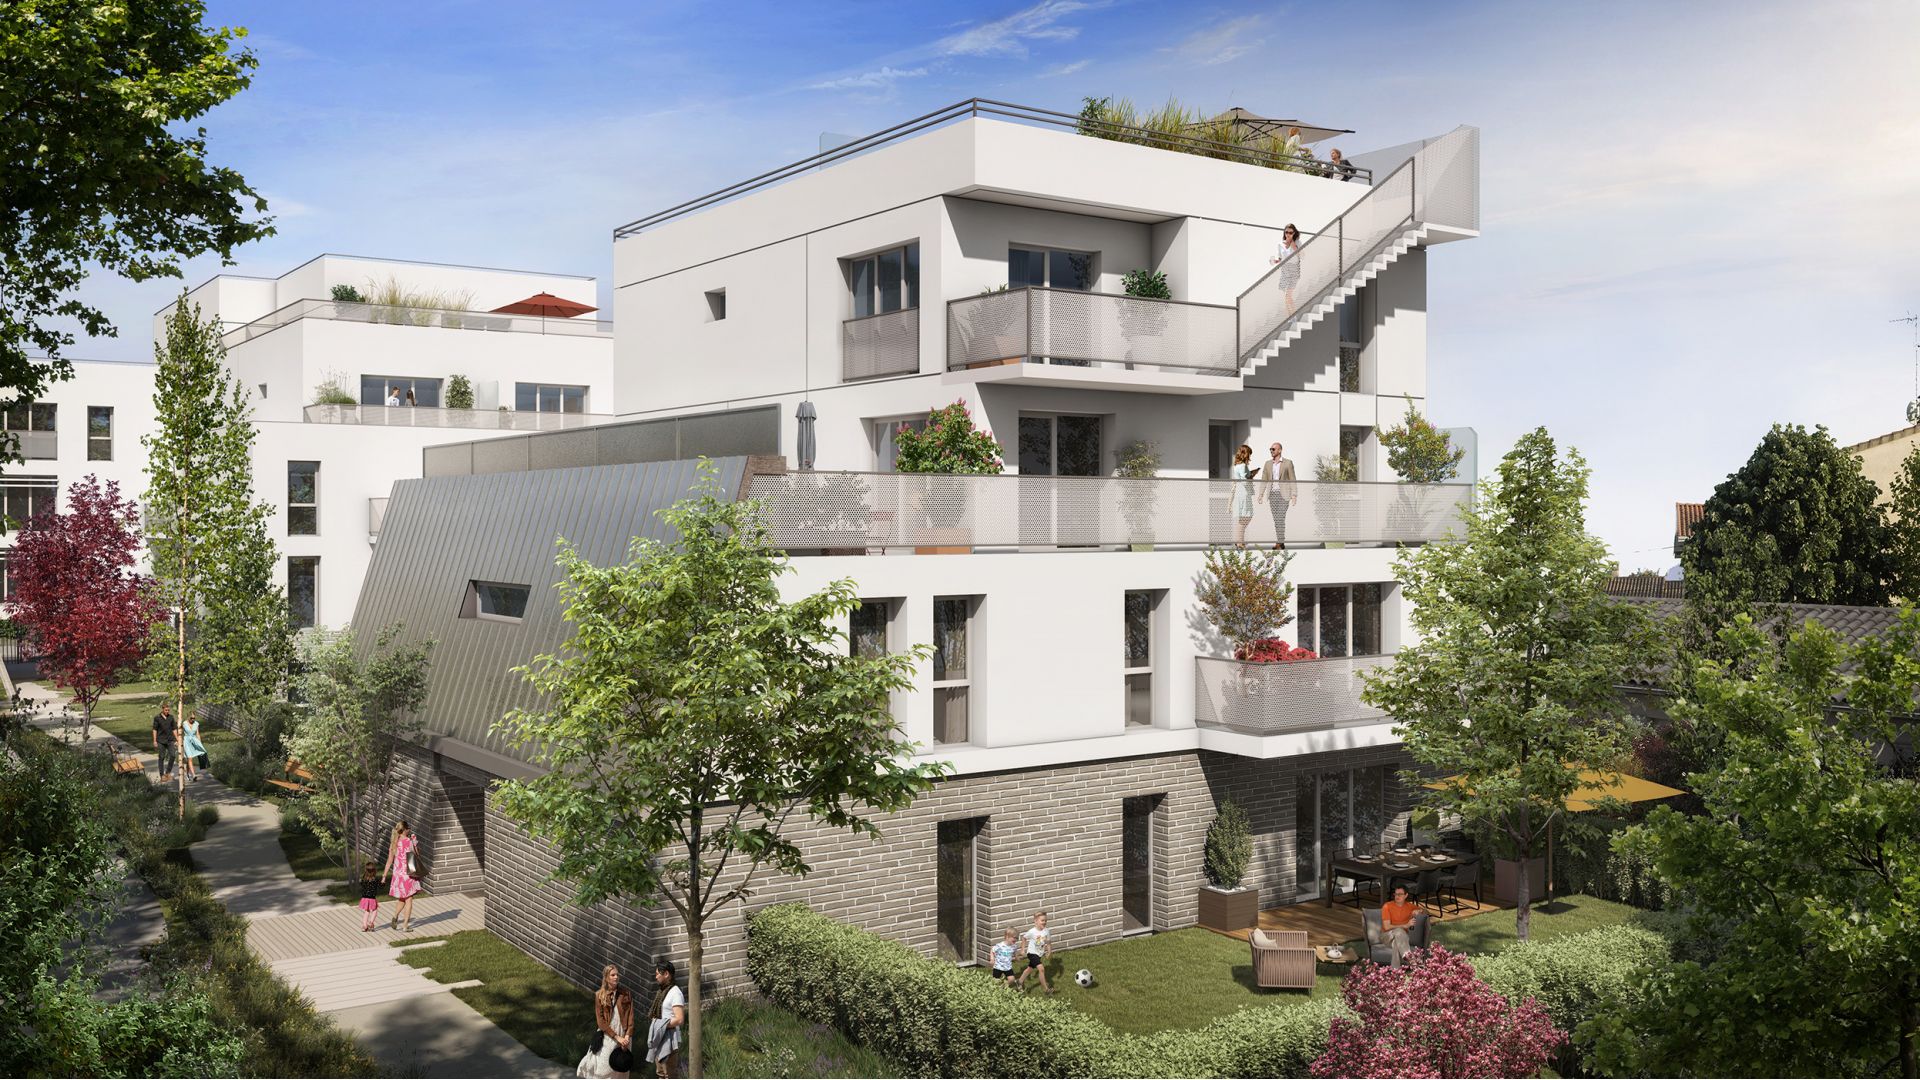 Greencity Immobilier - Résidence Amplitude - achat appartements neufs du T1 au T5 - Bezons - 95870 - Bât B